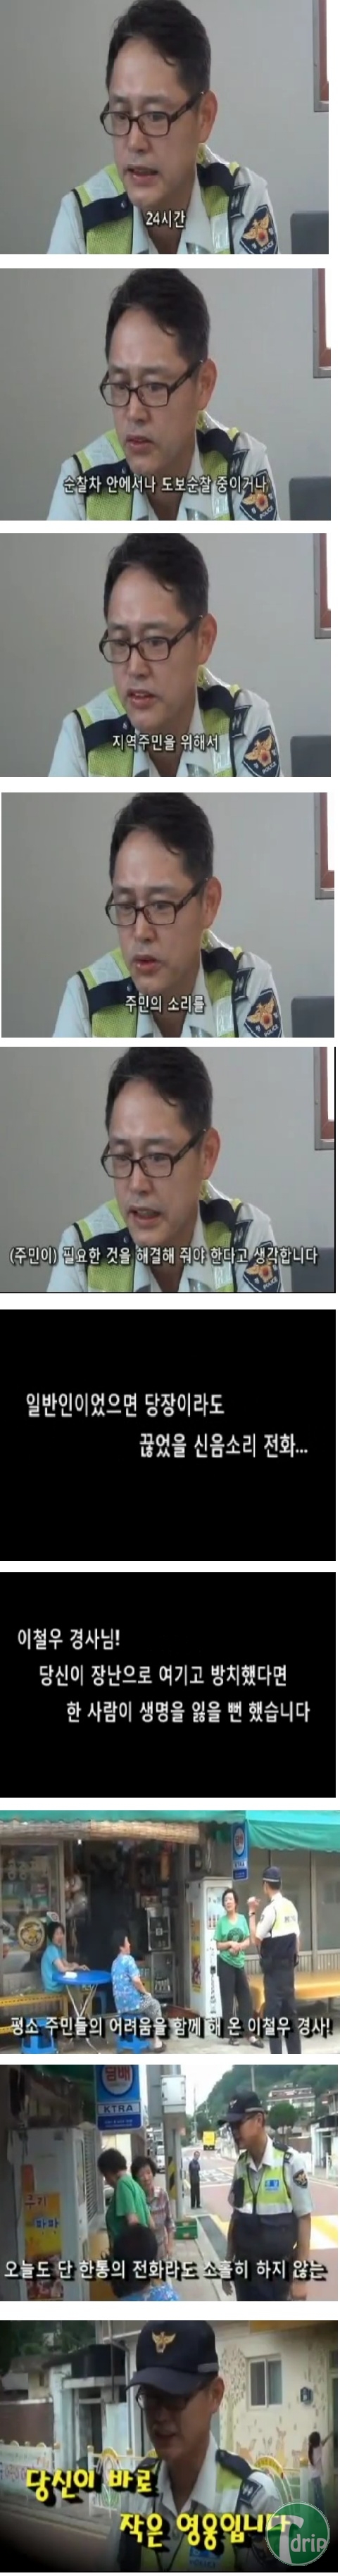 2 (5).jpg : 한국의 흔한 경찰관.jpg